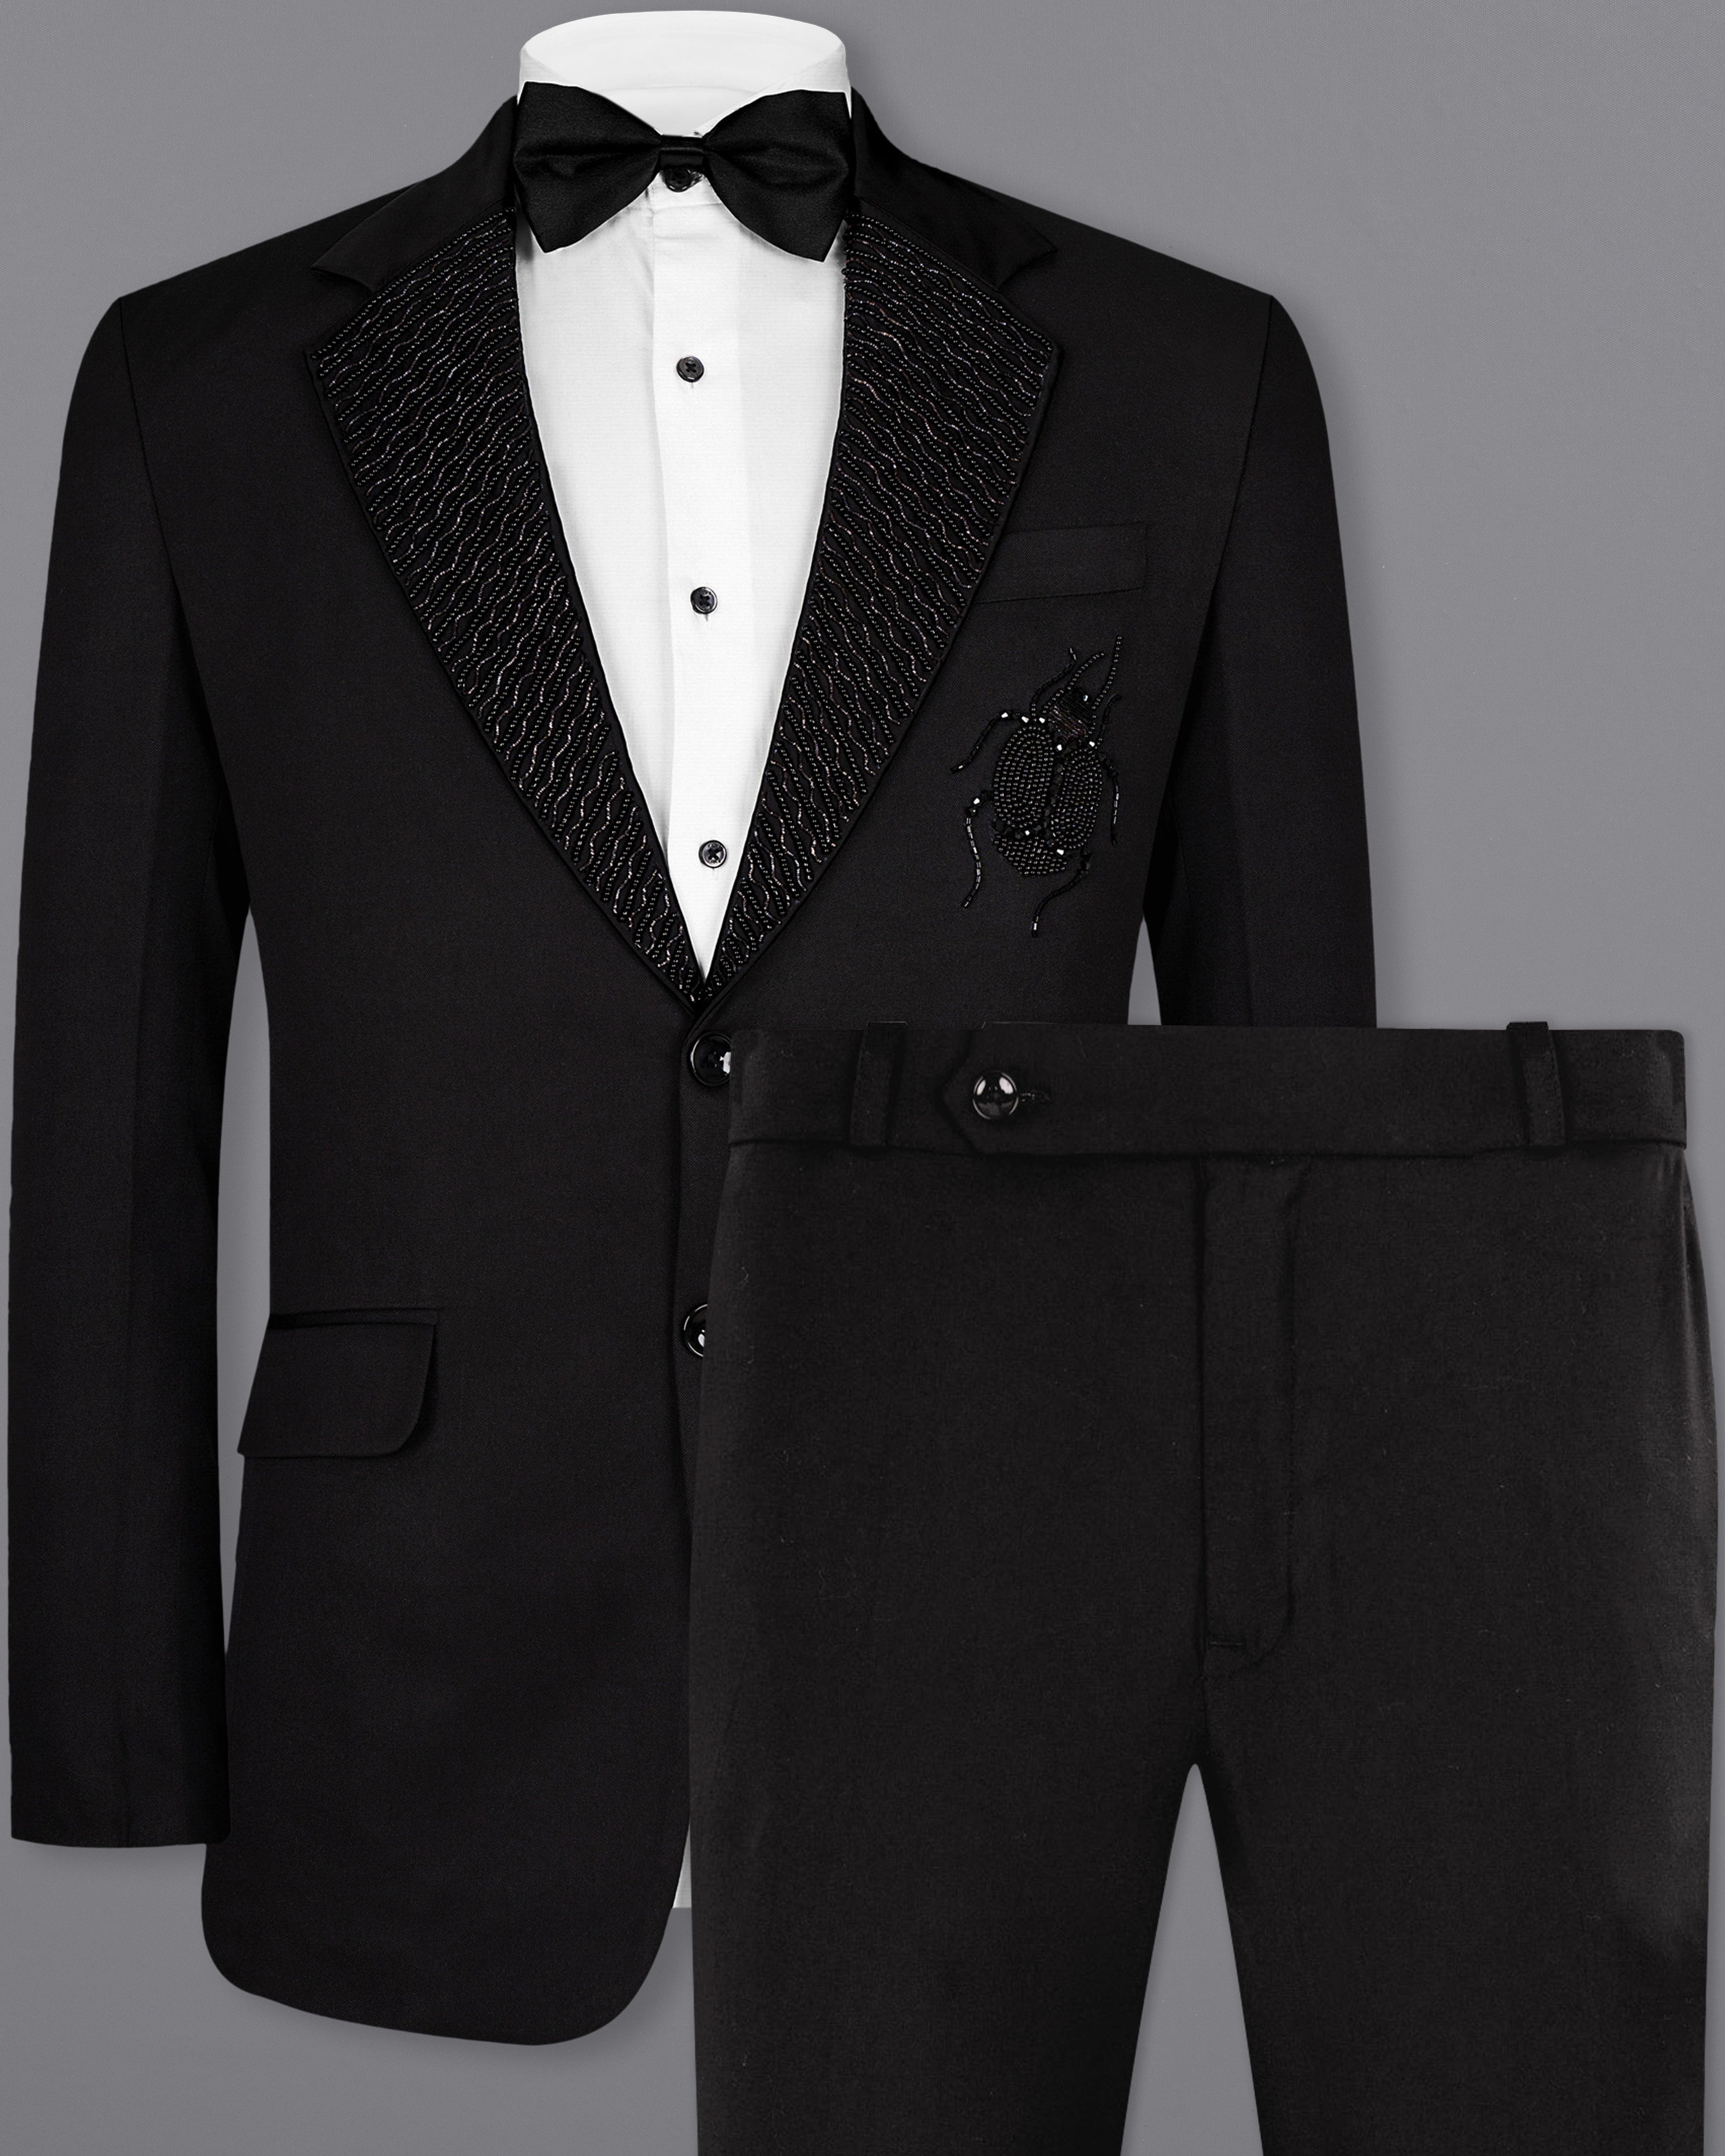 Jade Black Subtle Sheen Ladybird Patterned Wool Rich Tuxedo Suit